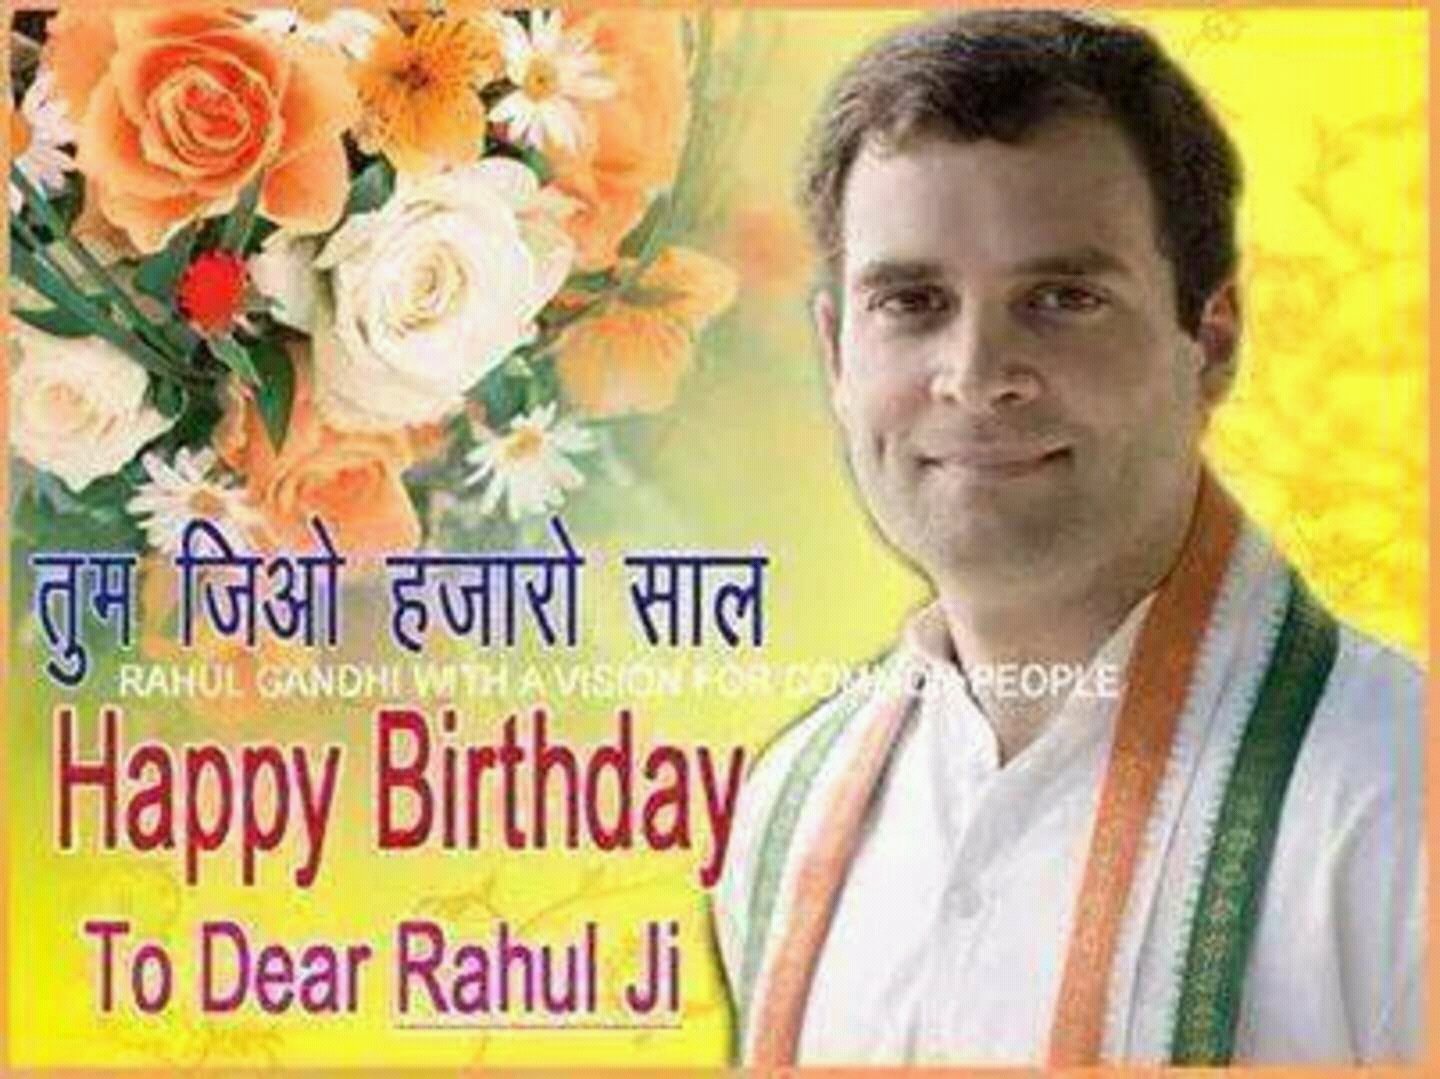  happy birthday rahul Gandhi ji 